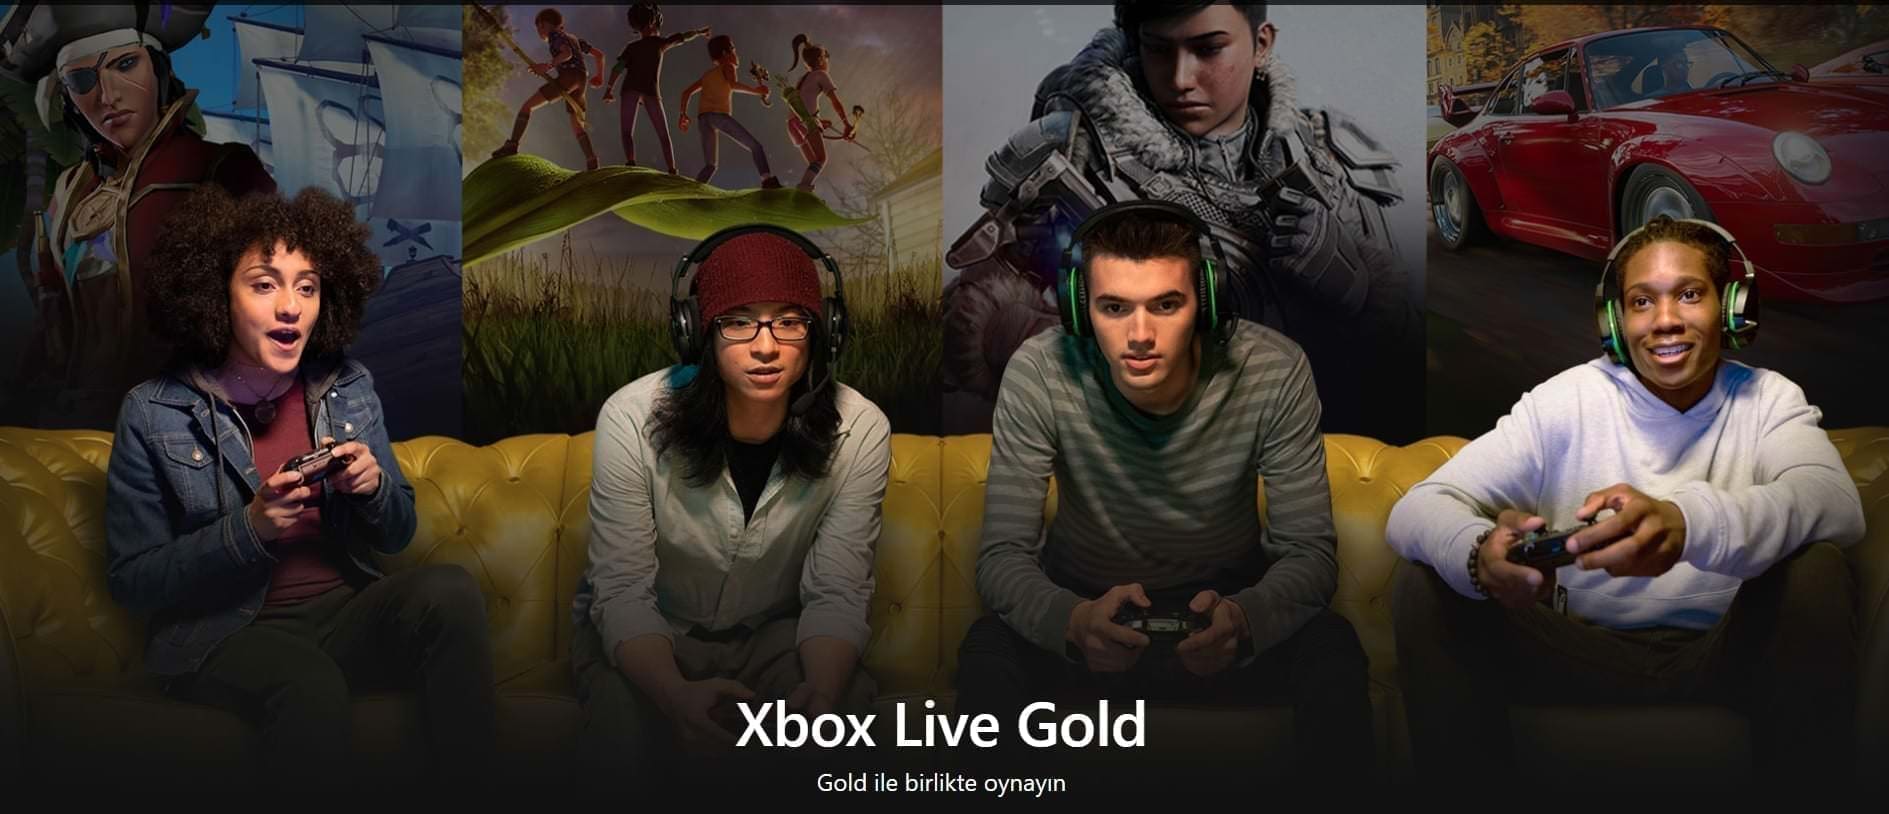 Xbox live gold ModArtPC - ModArt PC